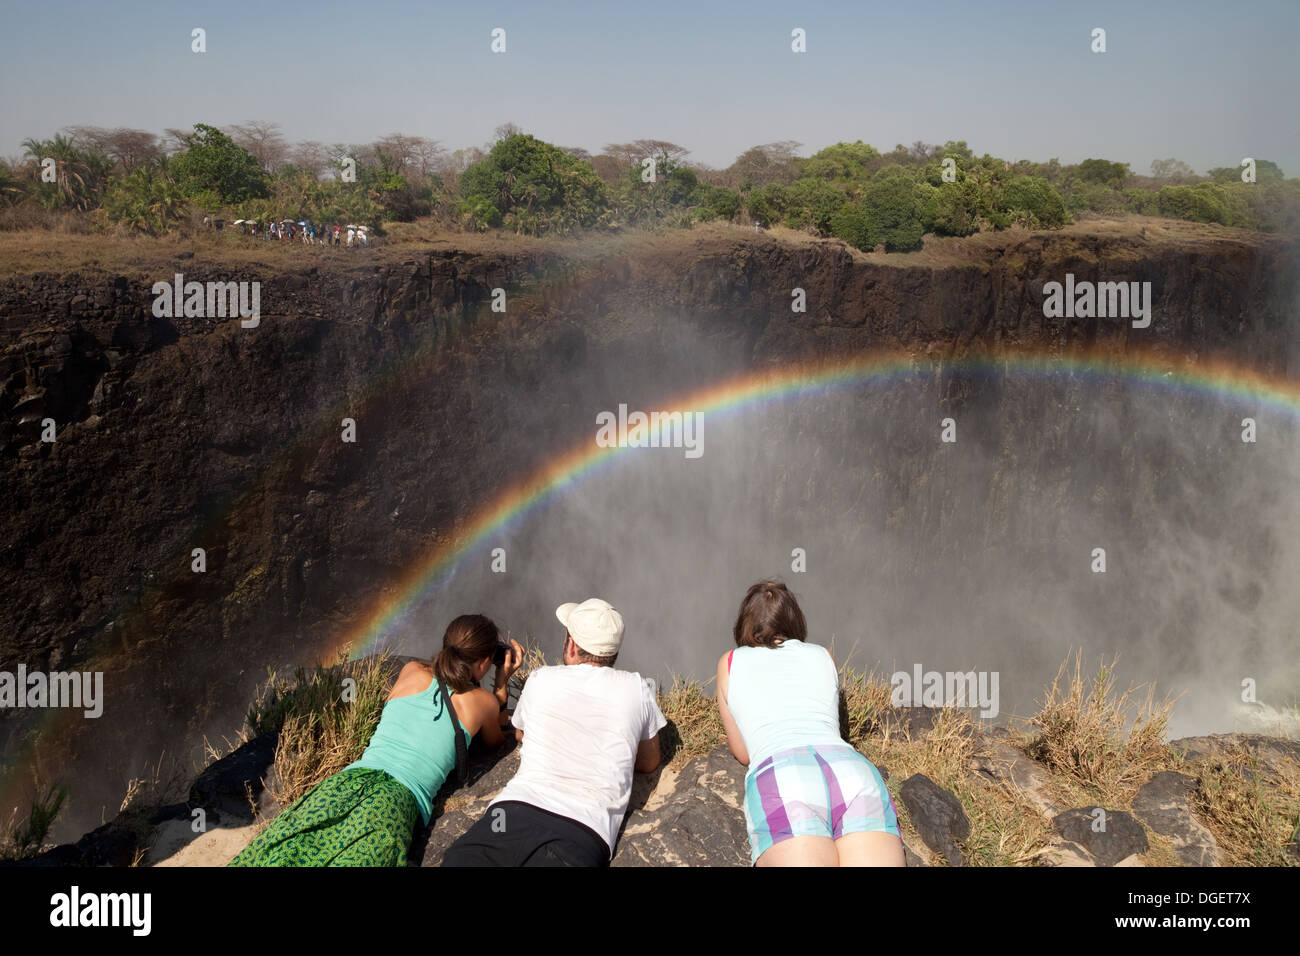 Las Cataratas Victoria Zambia, tres turistas en la isla de Livingstone, Zambia mirando el arco iris y las Cataratas Victoria, África Foto de stock